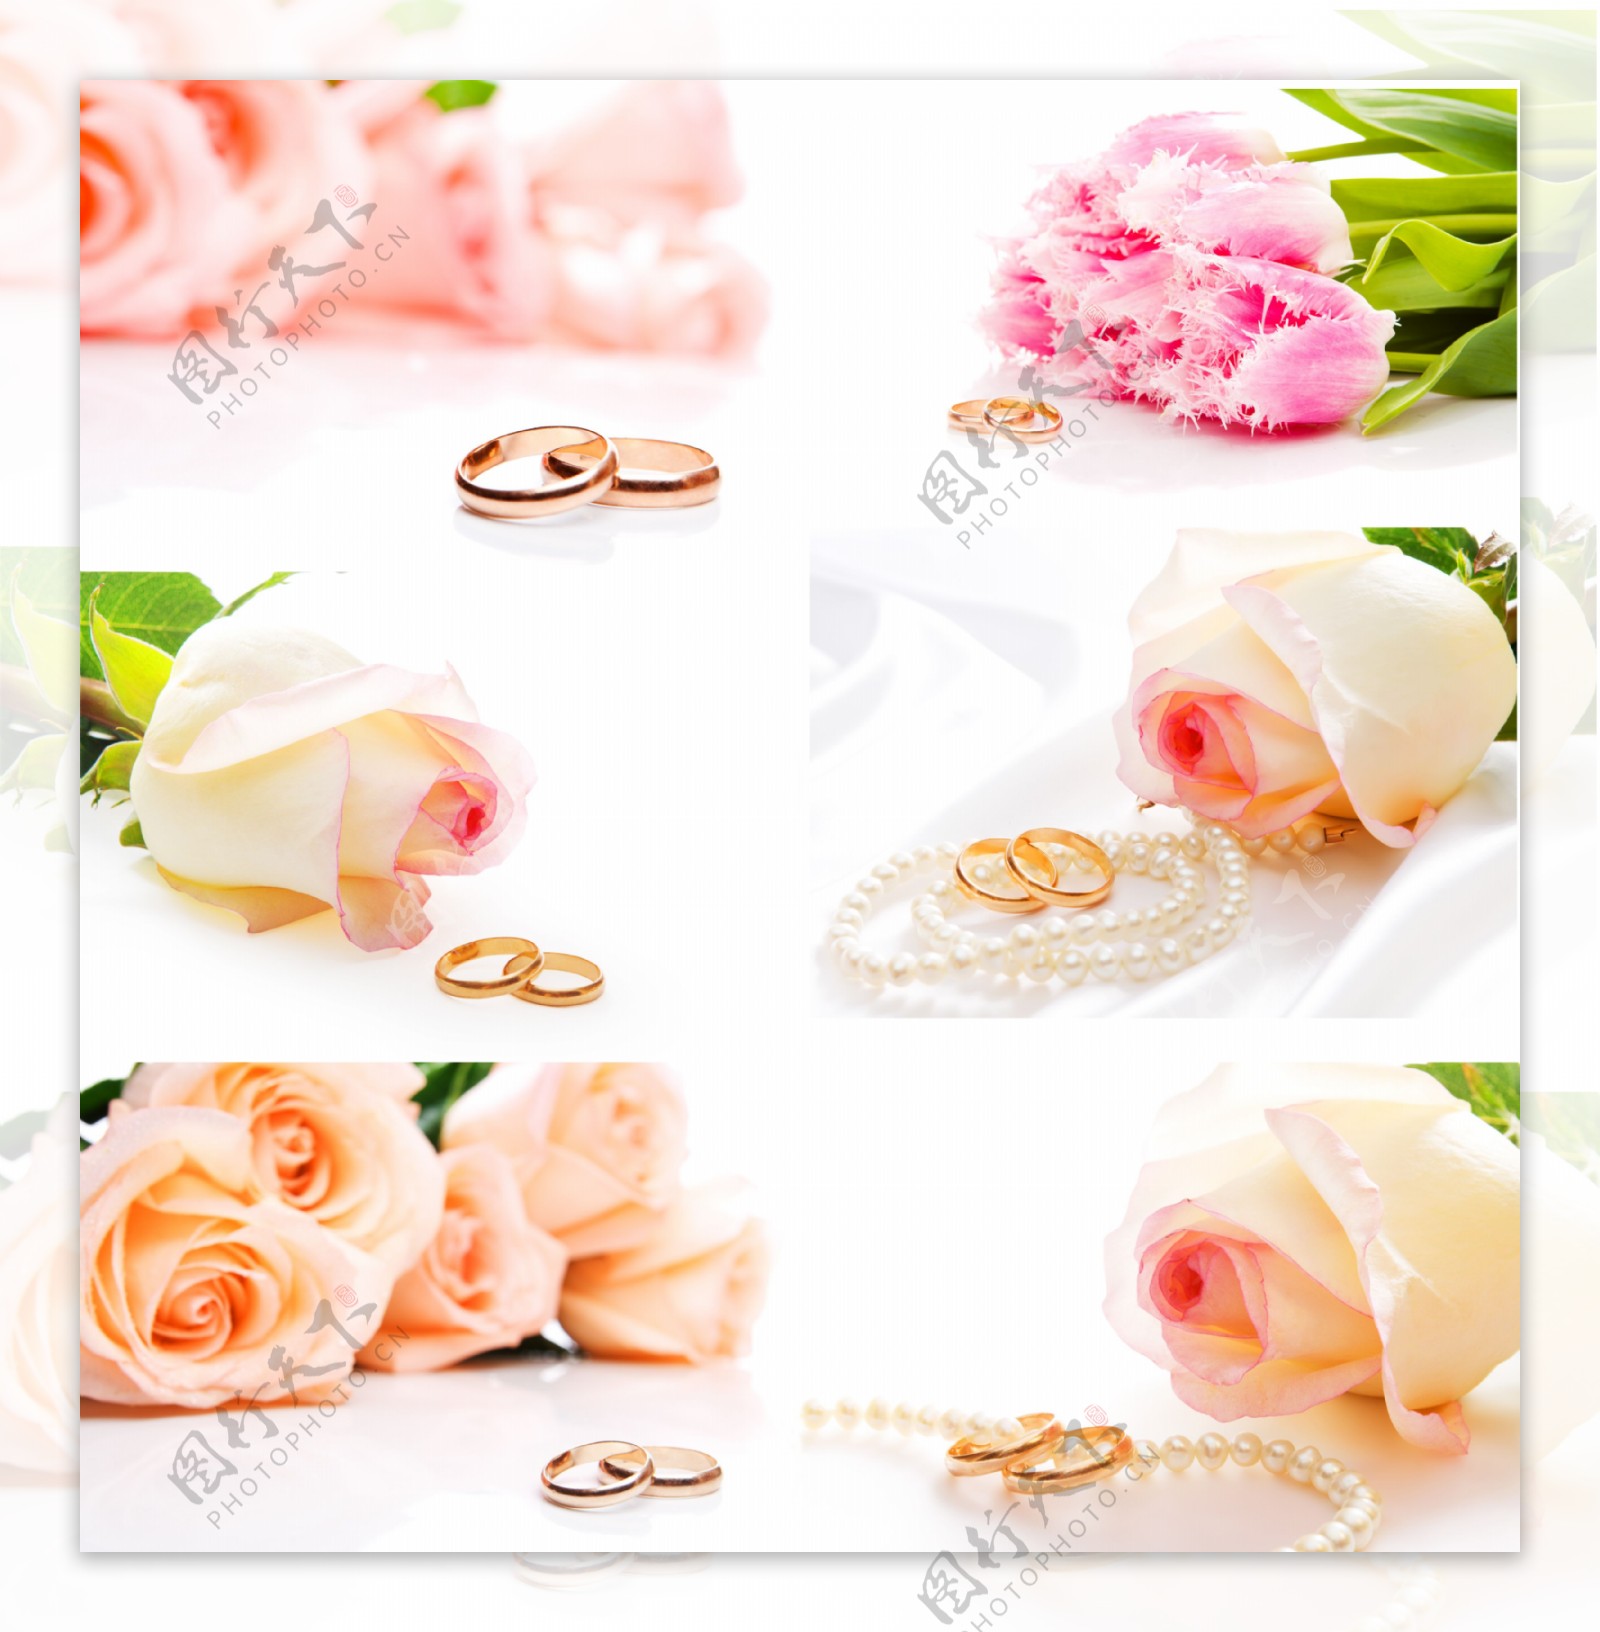 玫瑰花与戒指图片